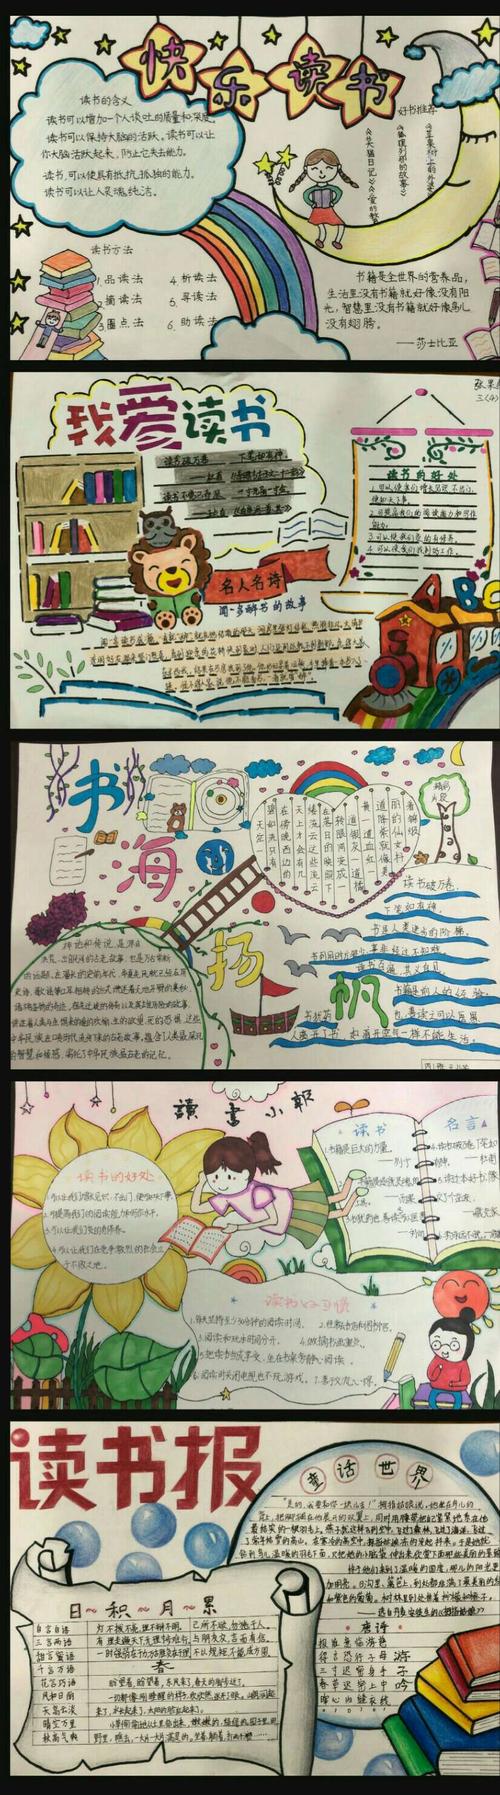 抒发读书感受 孩子们用画笔亲手制作了一幅幅精美的手抄报